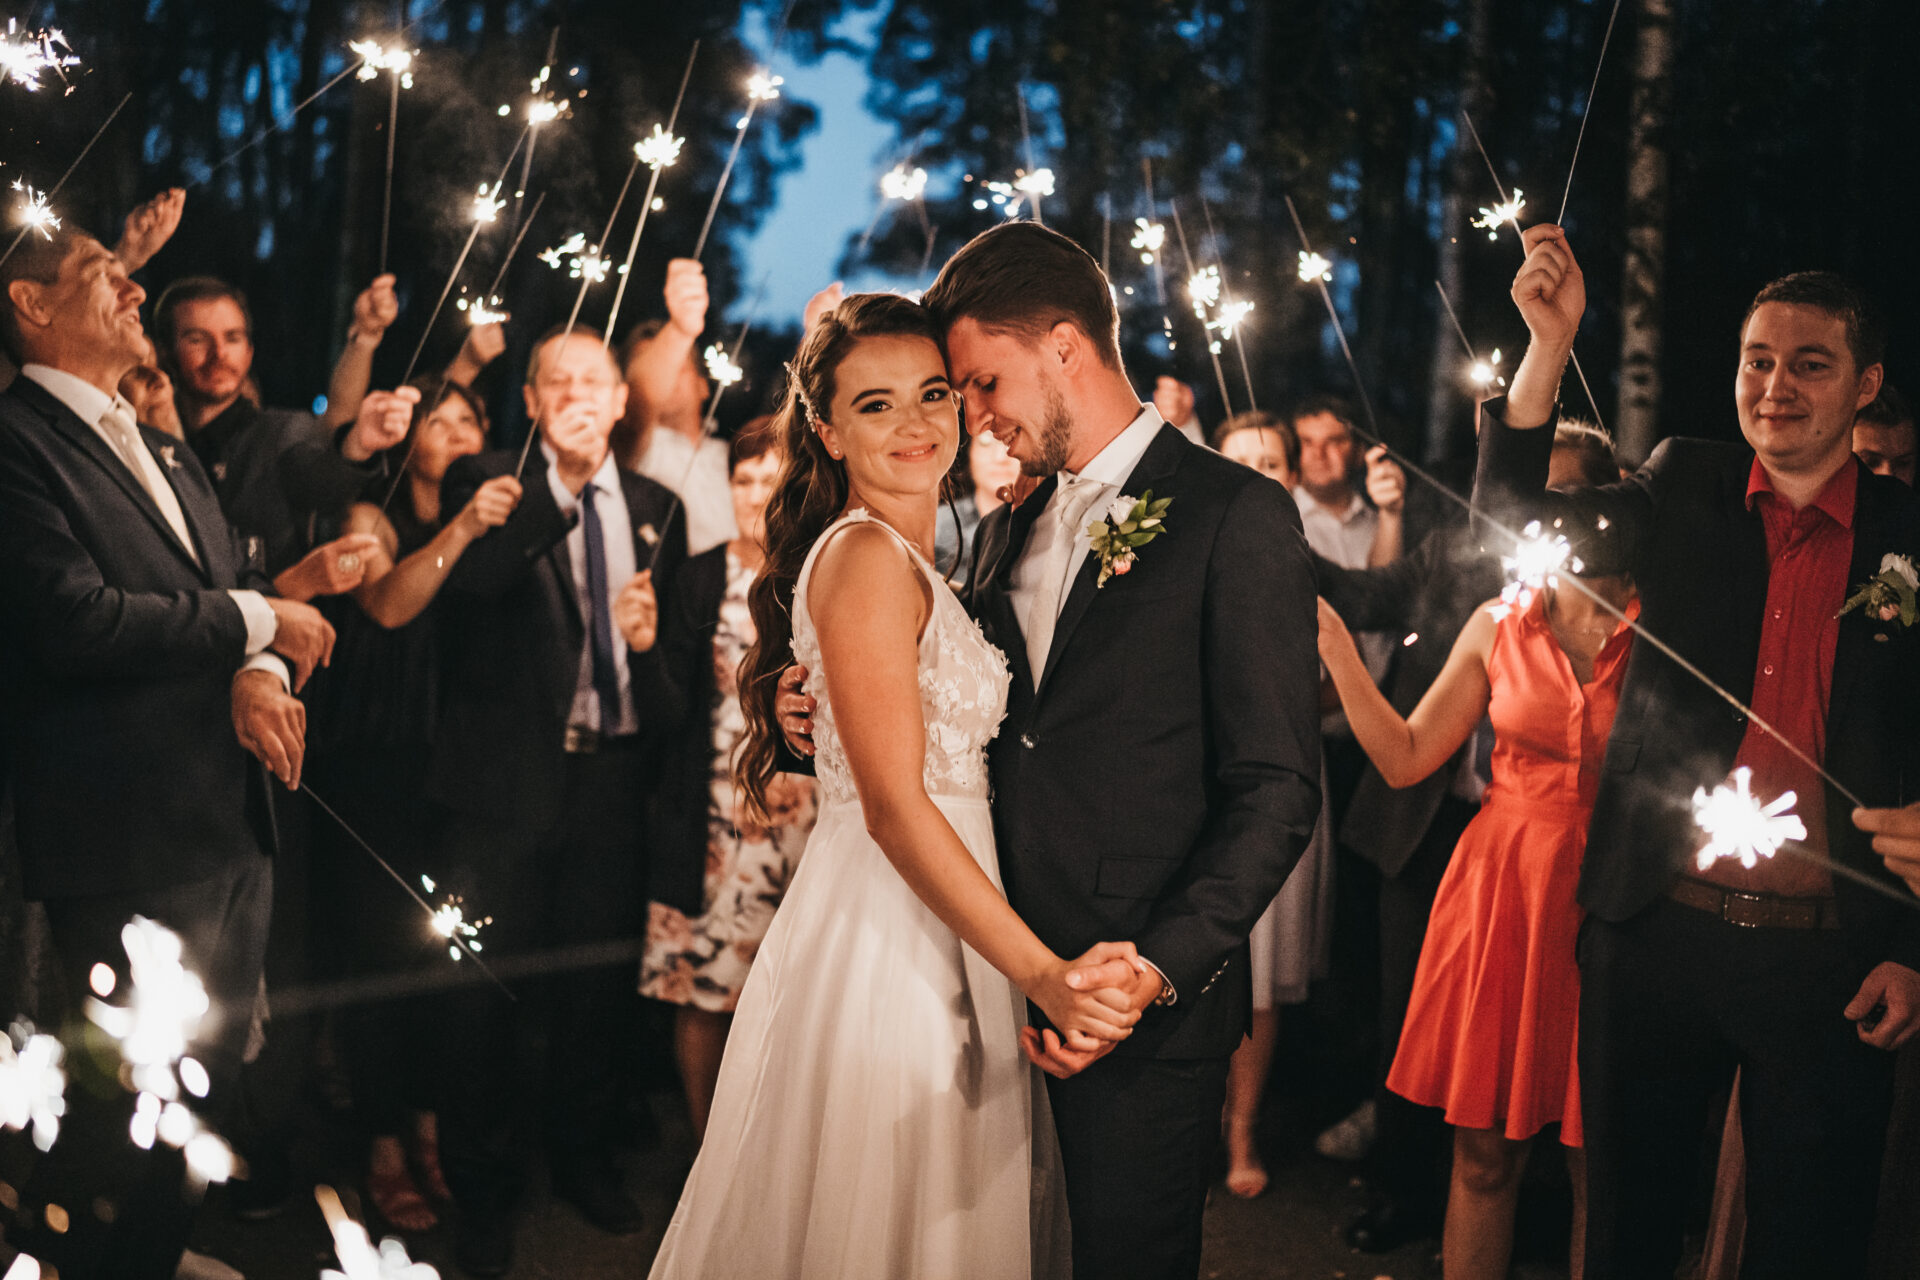 Svatební fotograf - večerní svatební fotografie nevěsta a ženich při tanci